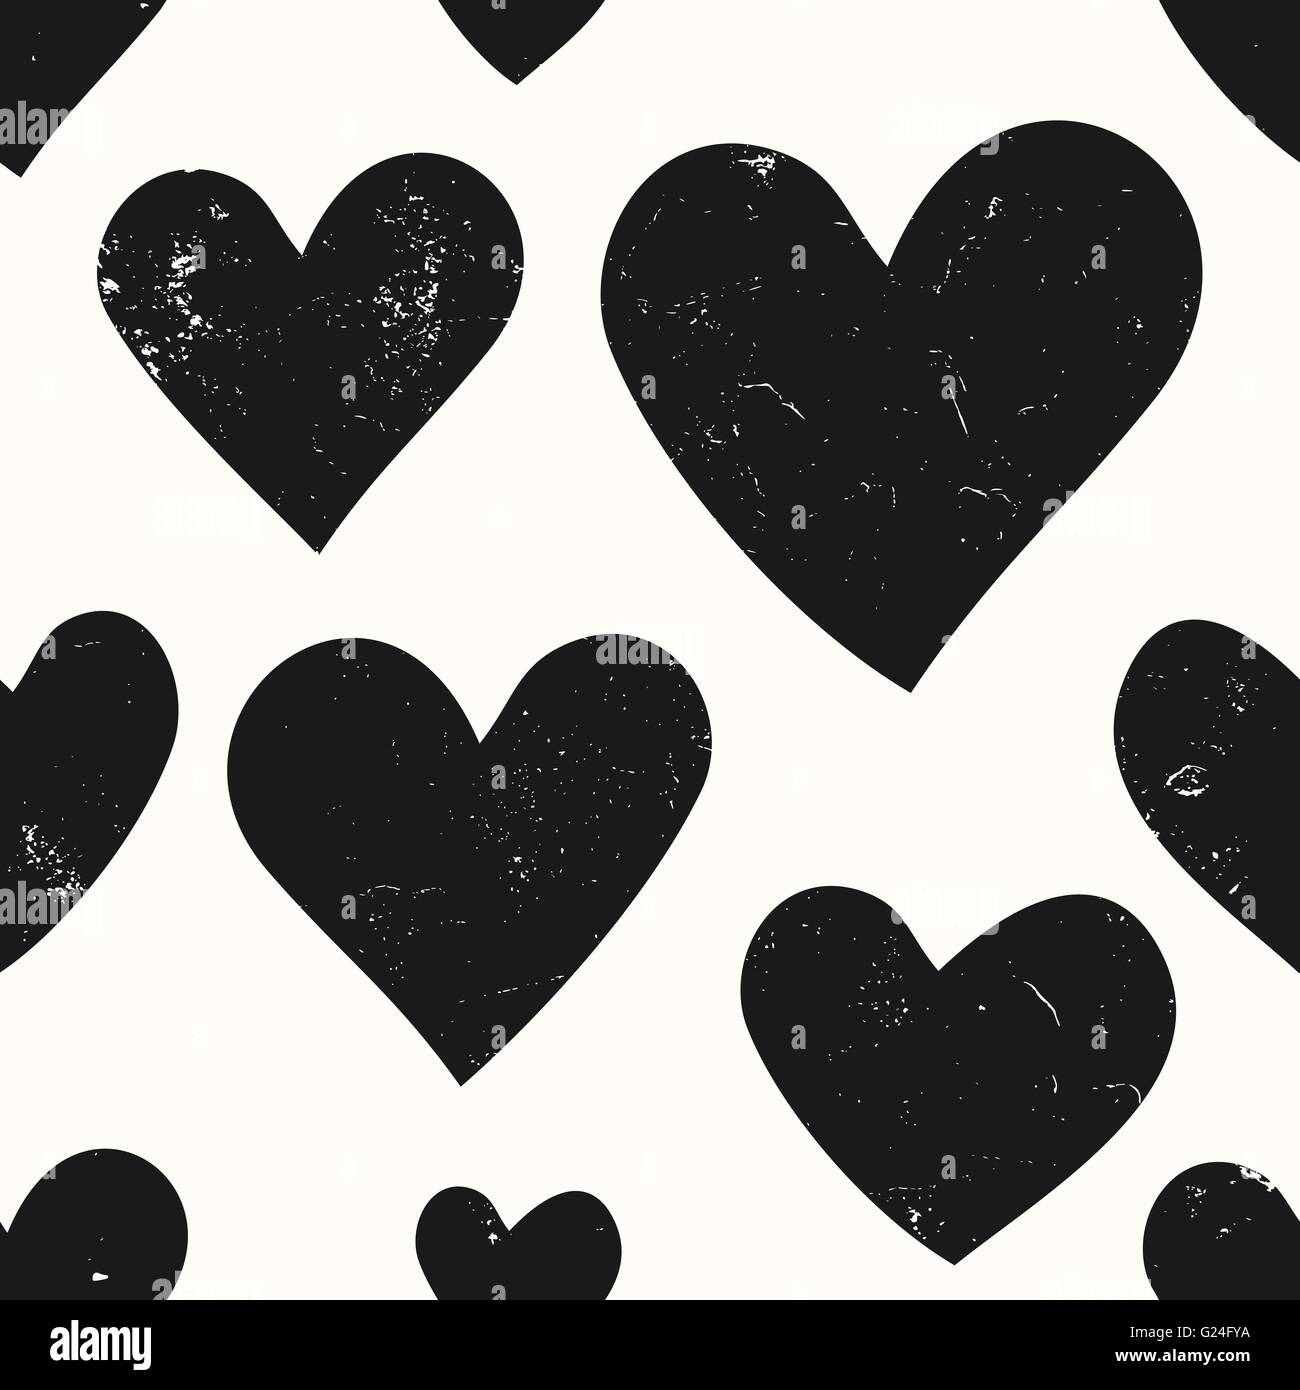 Abstrakte nahtlose Muster mit Herzen in schwarz und weiß. Modernes und stilvolles romantisches Design Plakat, Geschenkpapier, Vale Stock Vektor